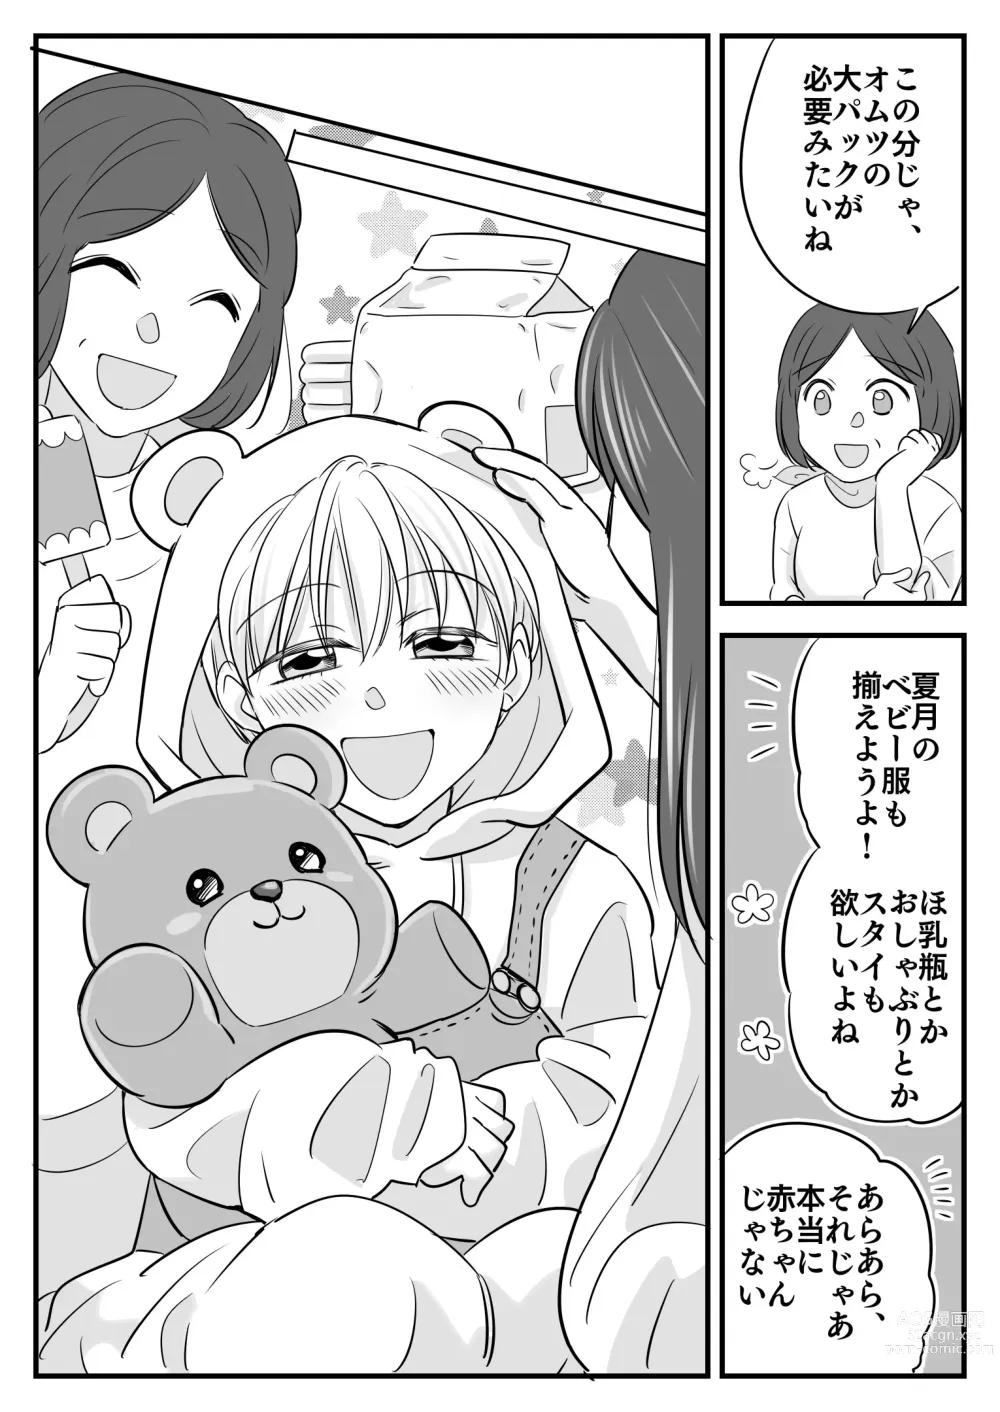 Page 20 of doujinshi Boku no Omutsu Kazoku Ryokou